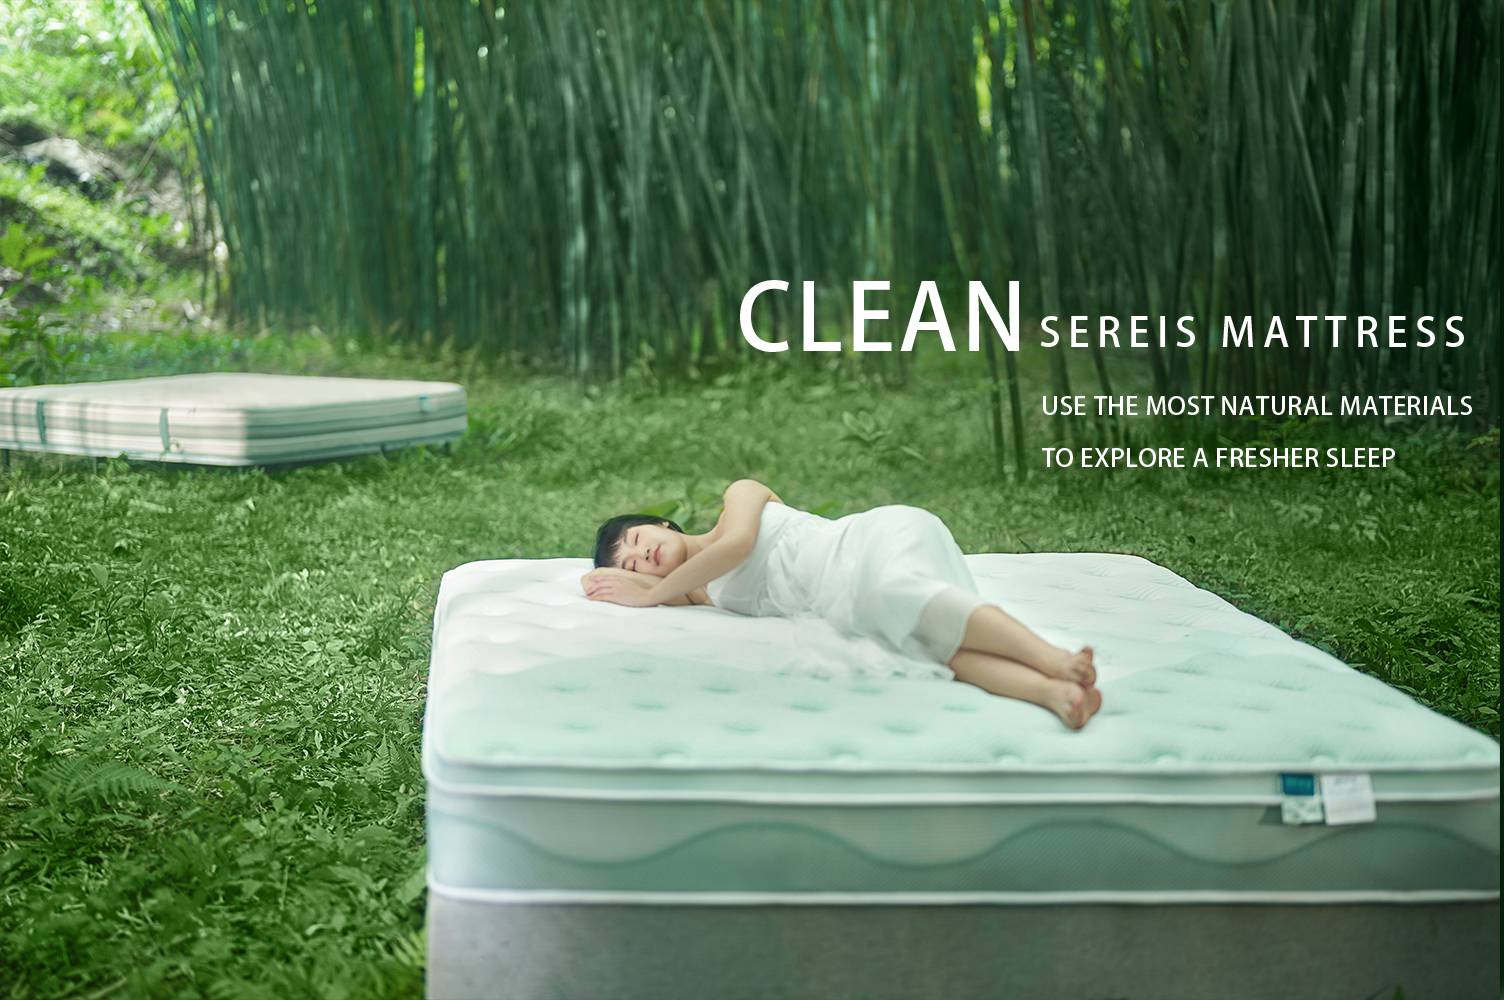 Kasur seri bersih LISY , menawarkan pengalaman tidur yang segar